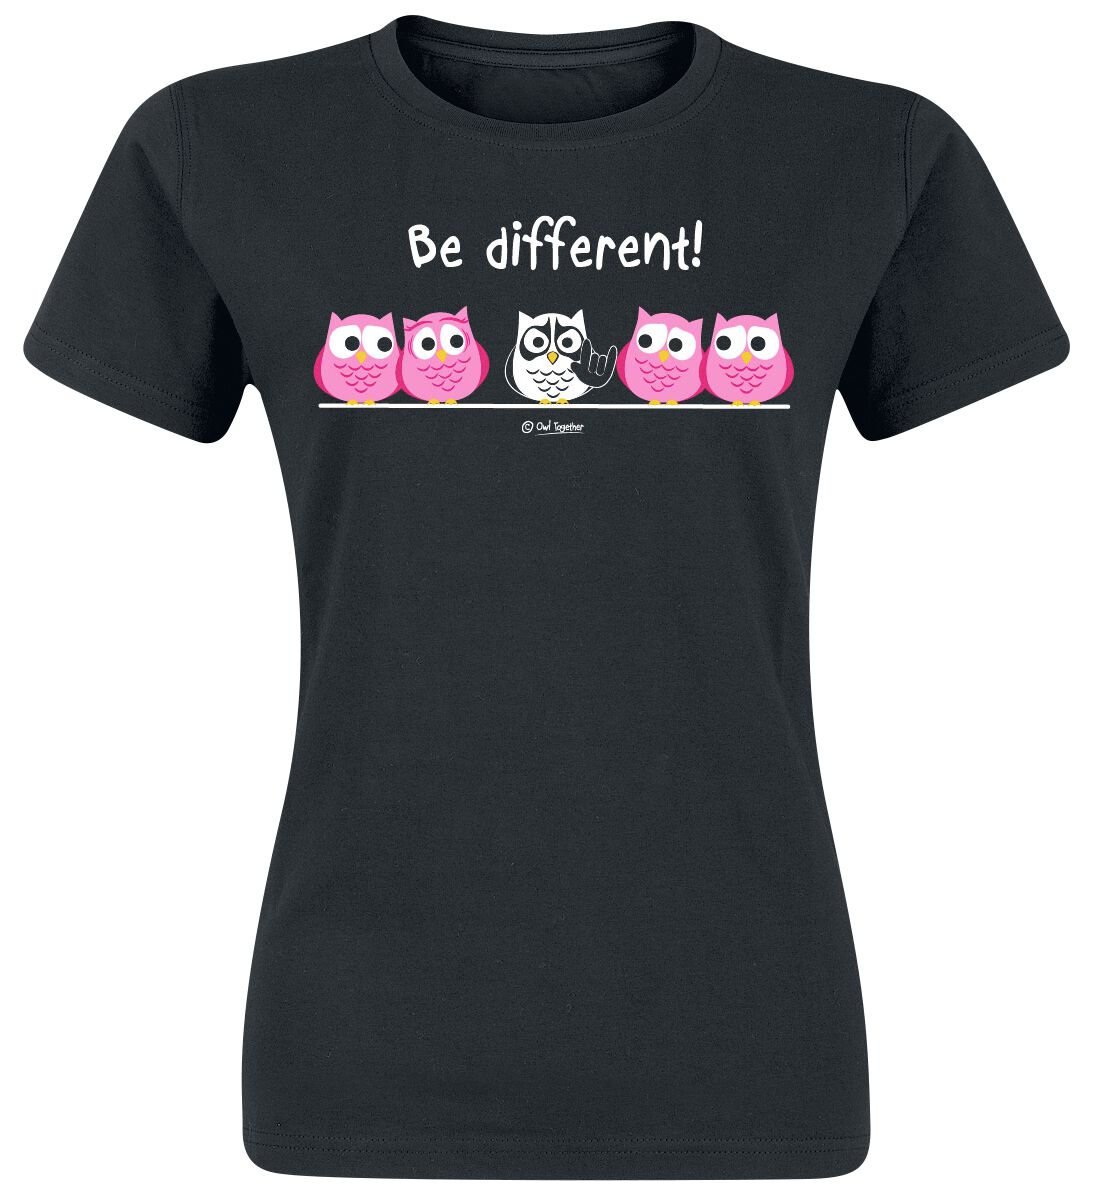 Be Different! T-Shirt - Be Different! - Metal - XXL bis 3XL - für Damen - Größe XXL - schwarz